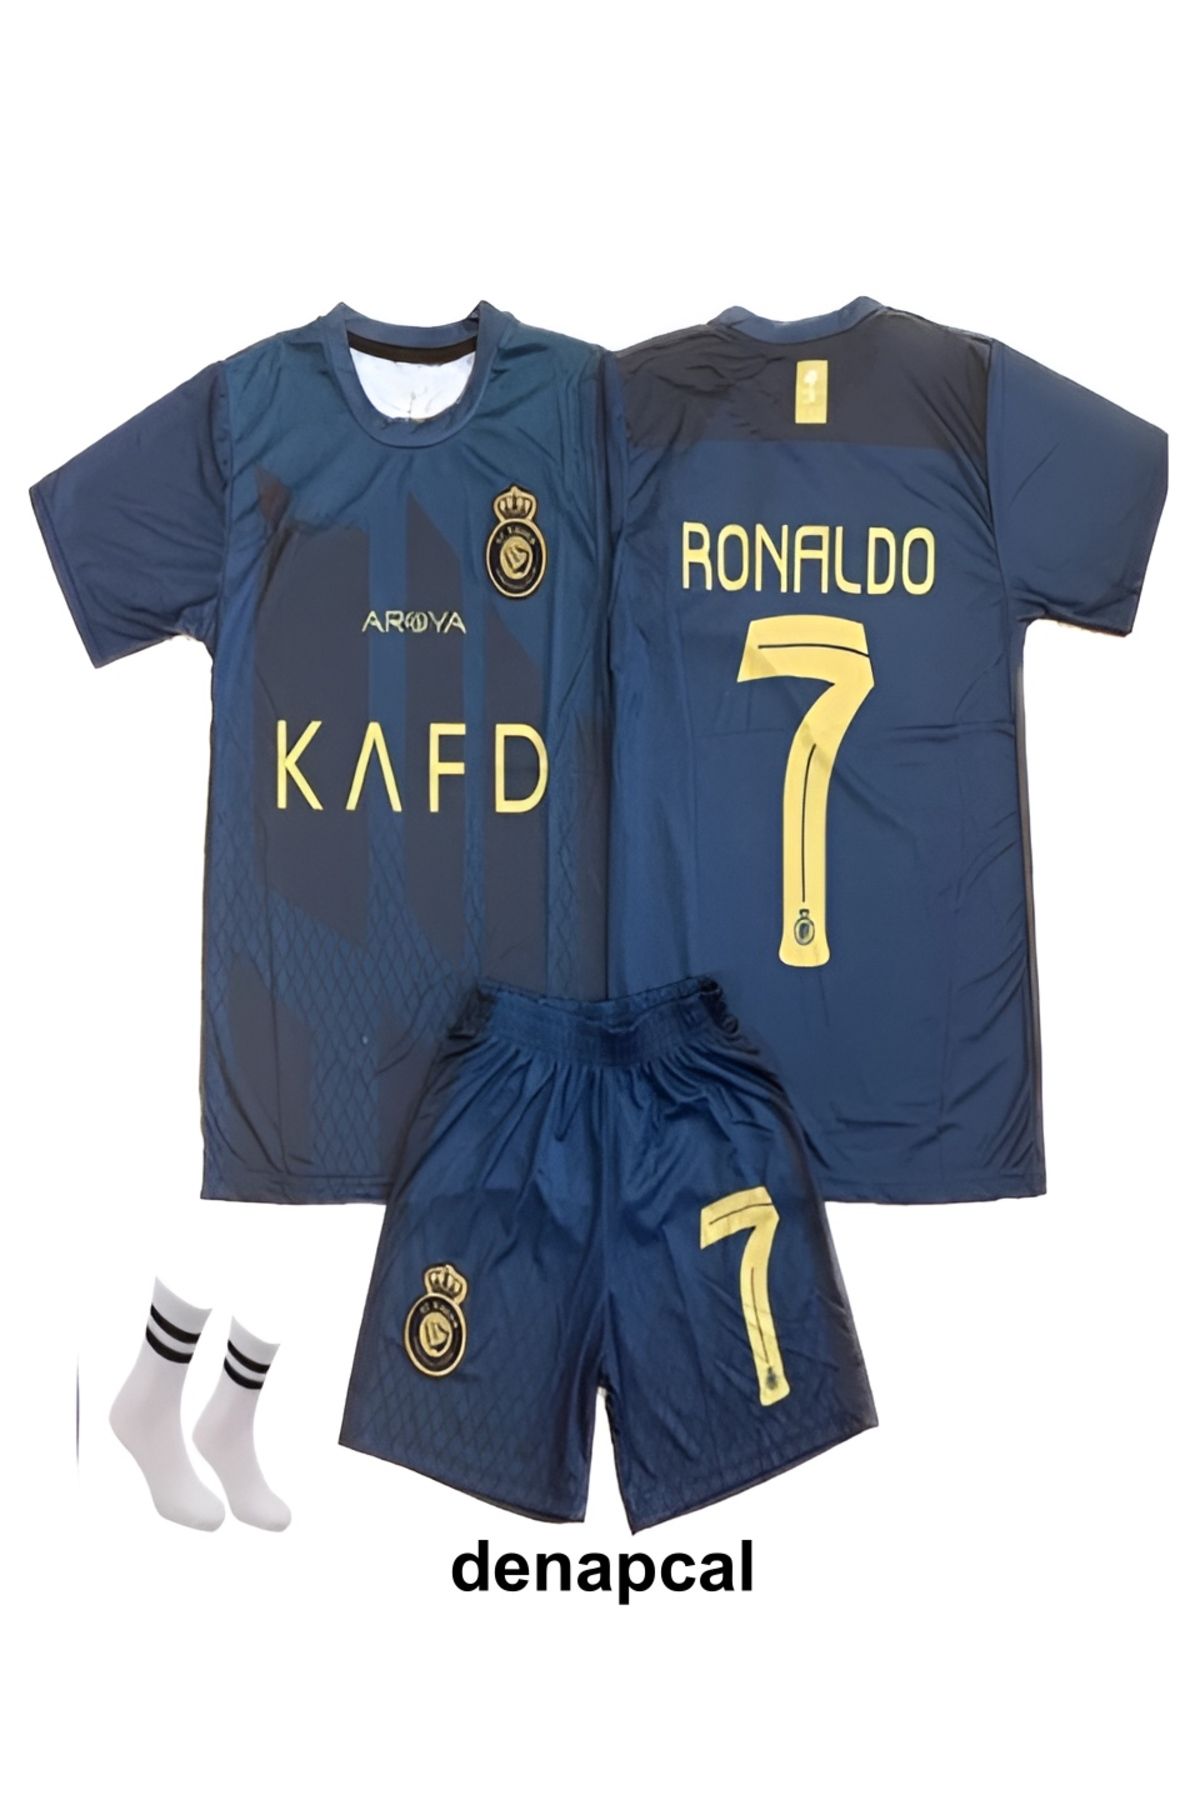 DENAPCAL Ronaldo Lacivert Al Nassr Cr7 Yeni Sezon 3'lü Çoçuk Forma Seti ( Forma,şort Ve Çorap )